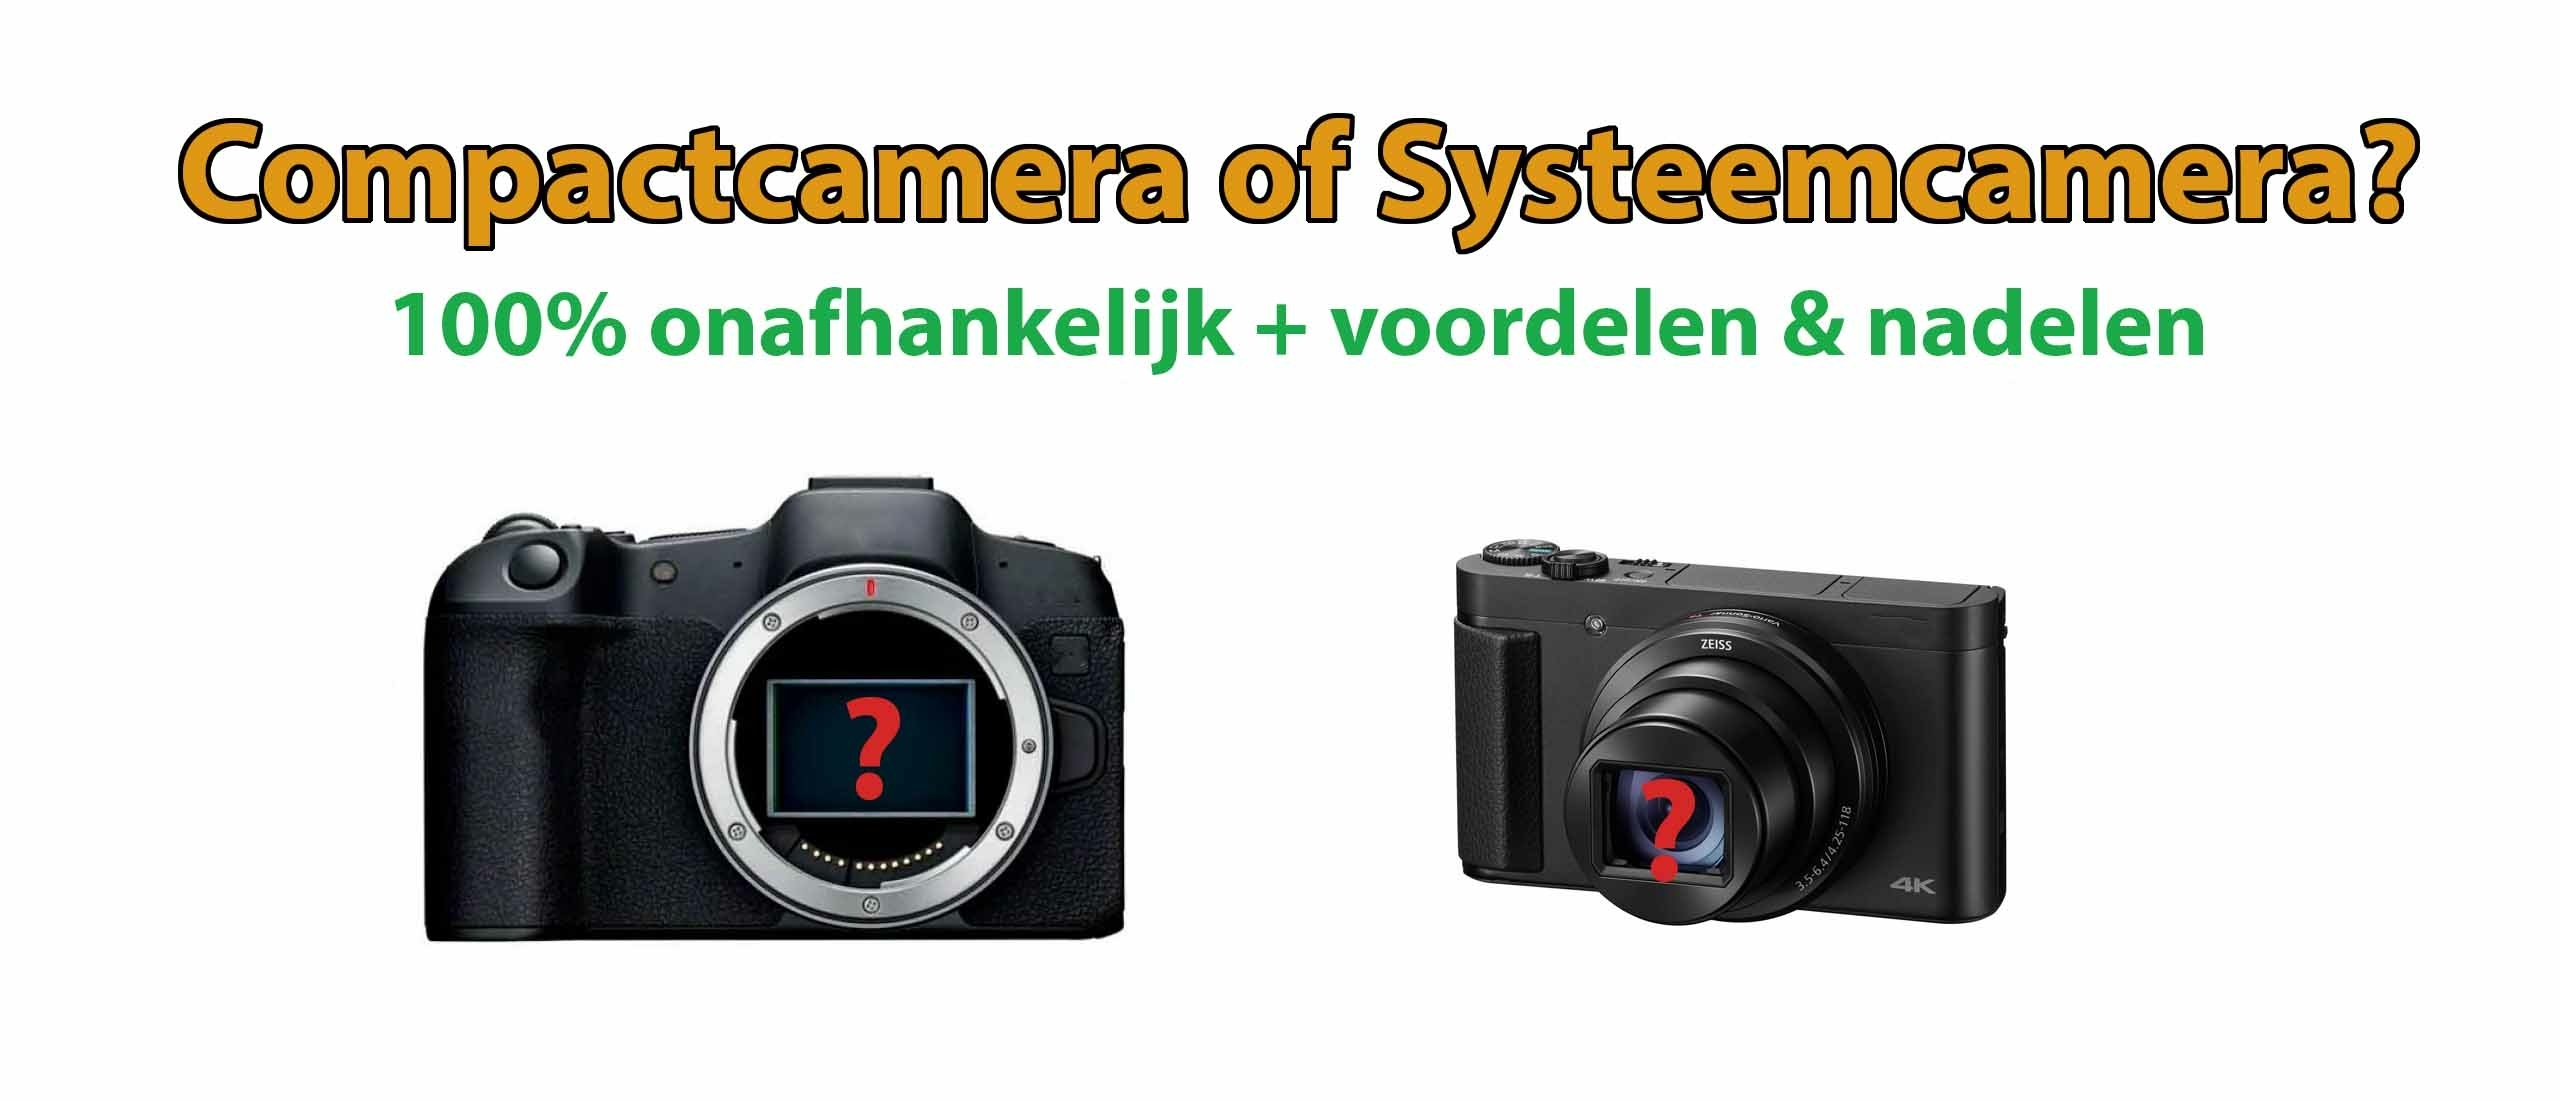 Compact camera of systeemcamera kopen? Verschillen en wat is beter?